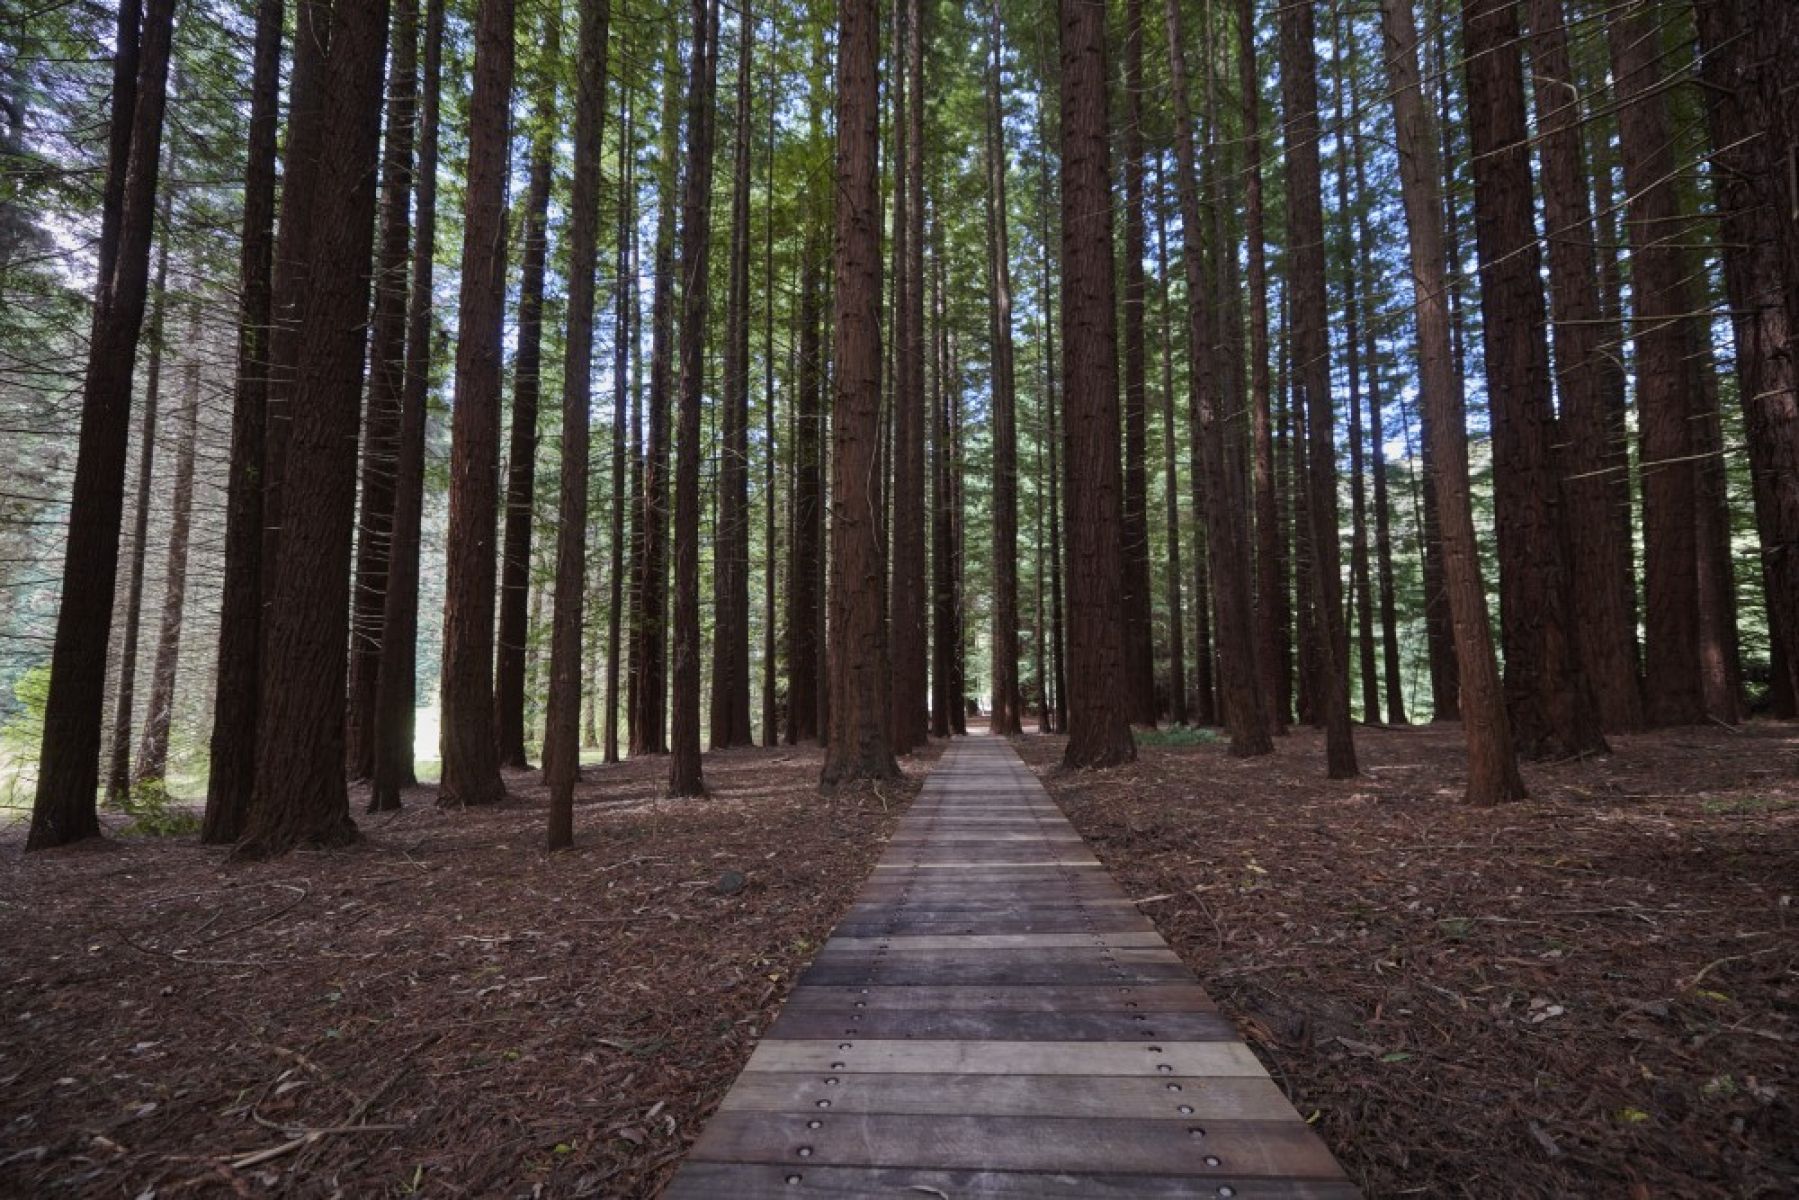 A wooden boardwalk runs between tall Californian Redwoods.